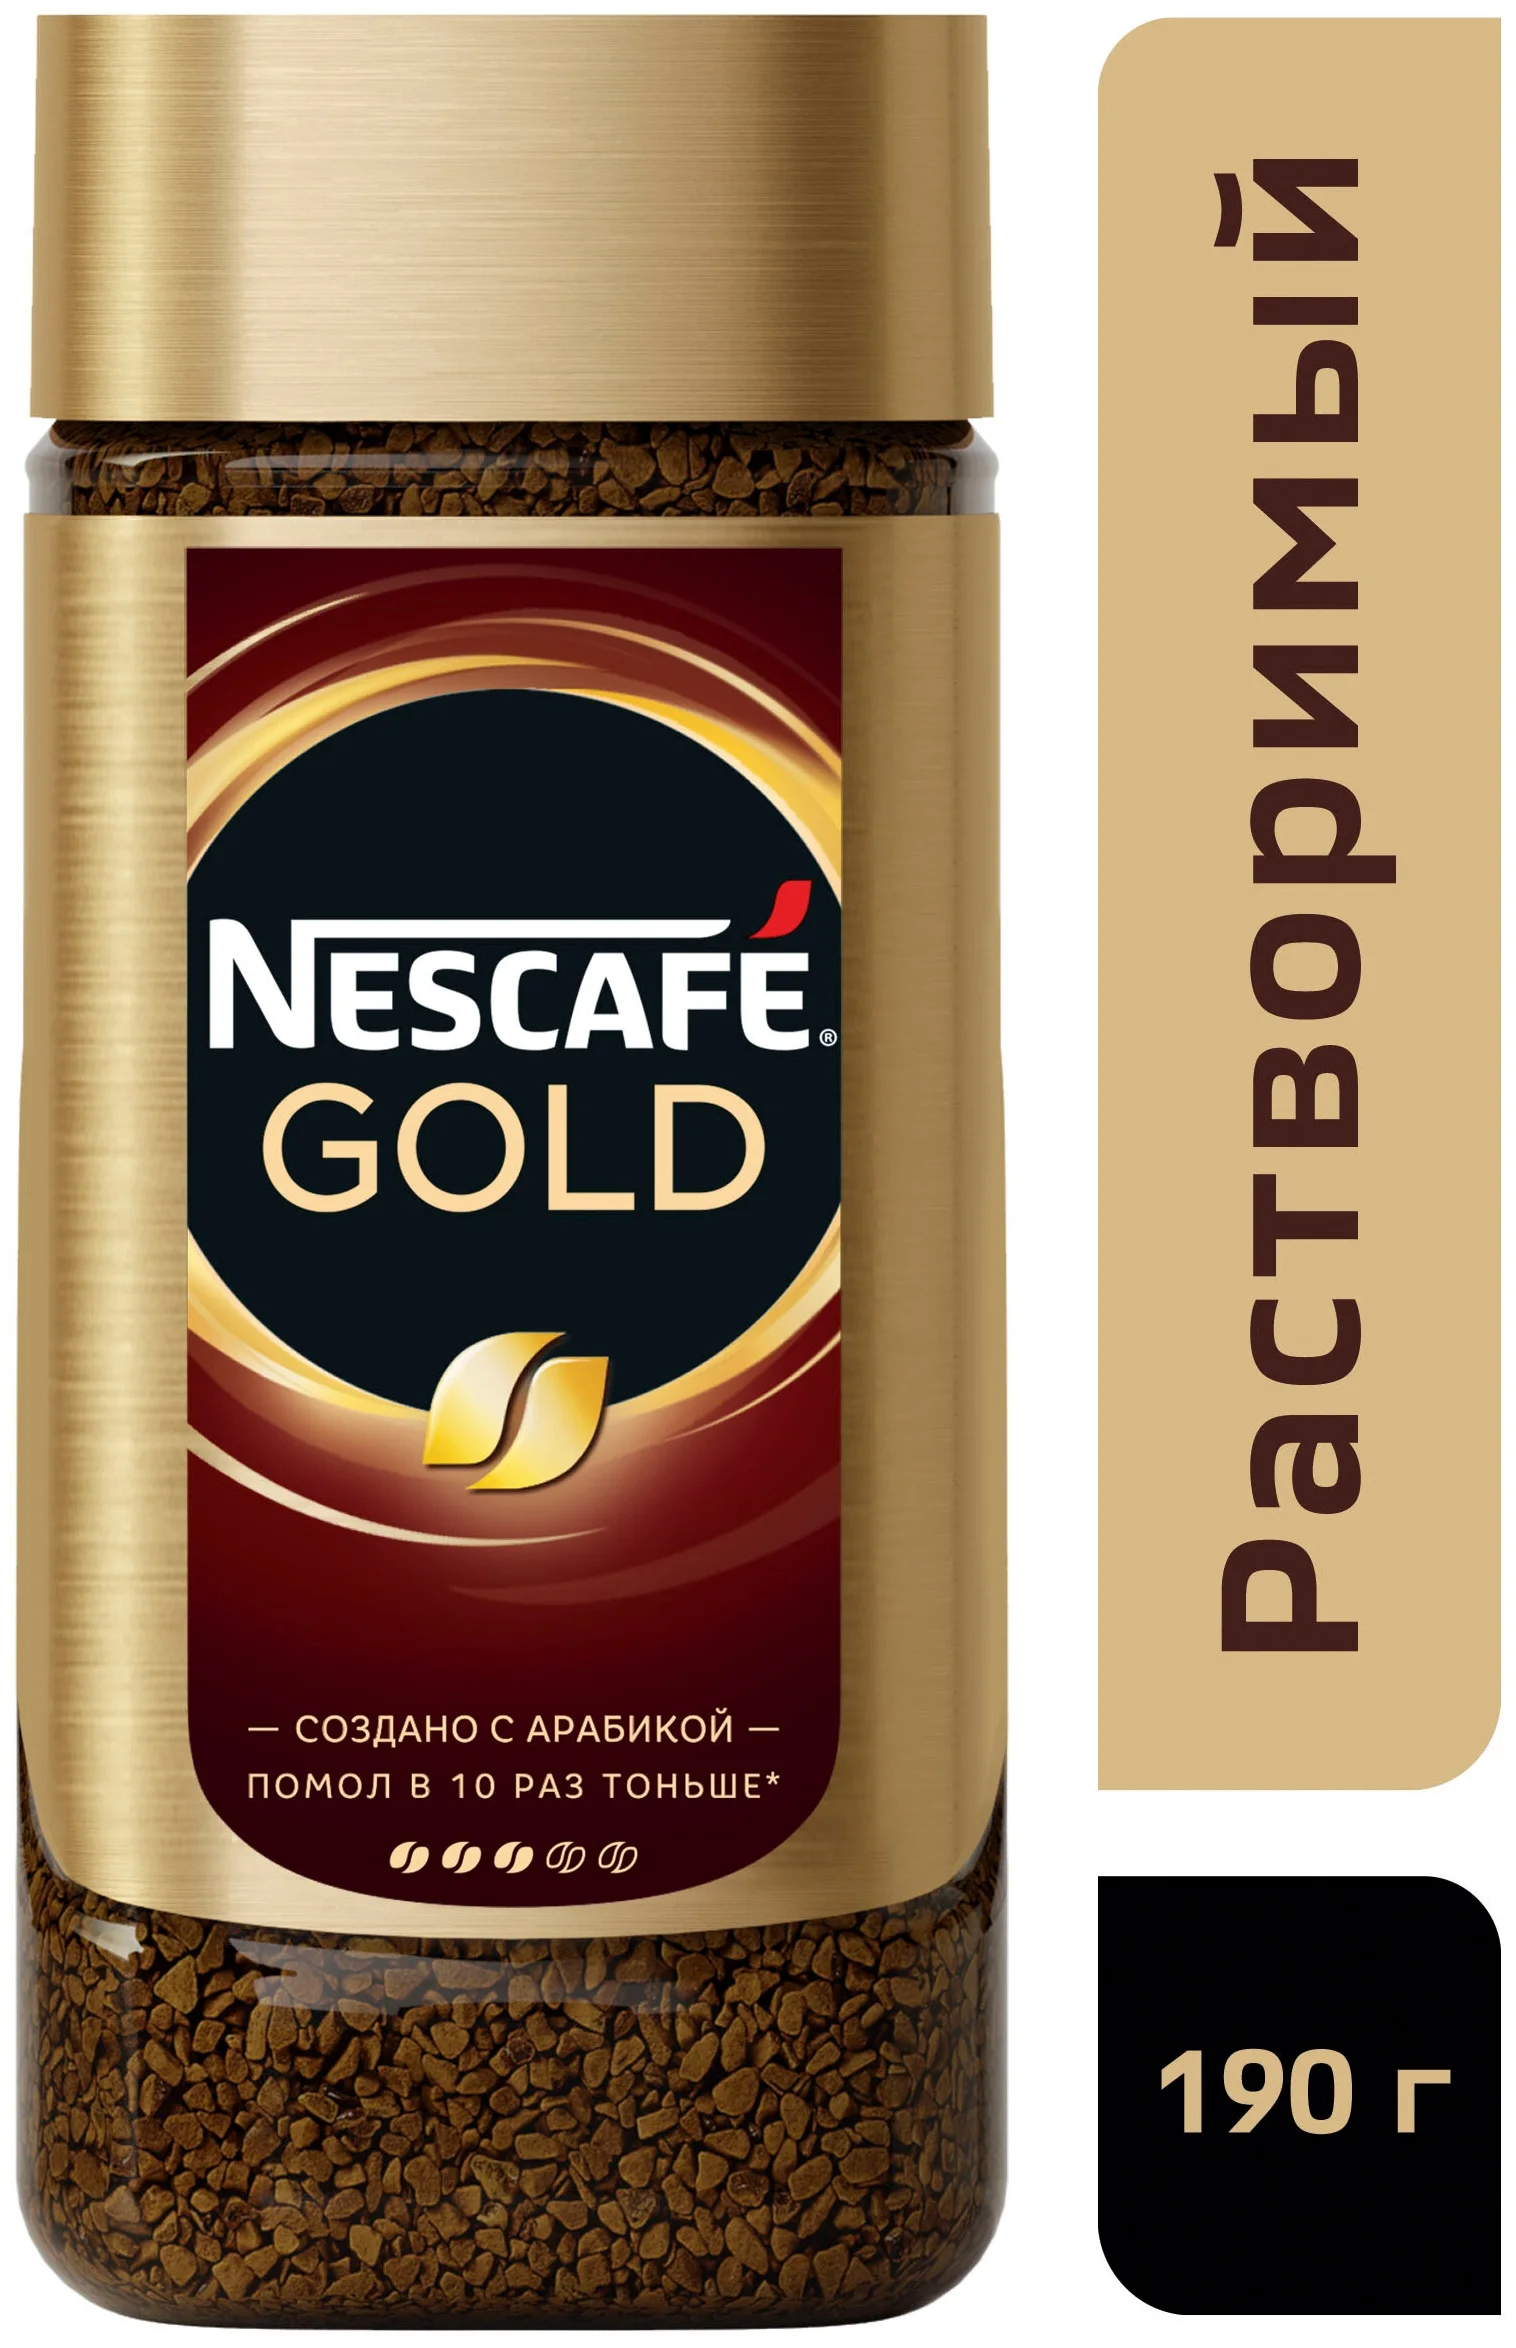 Nescafe gold молотый. Нескафе Голд 190. Кофе Nescafe Gold 95 г. Кофе Нескафе Голд 190г ст/б. Кофе растворимый Nescafe Gold, 190г.